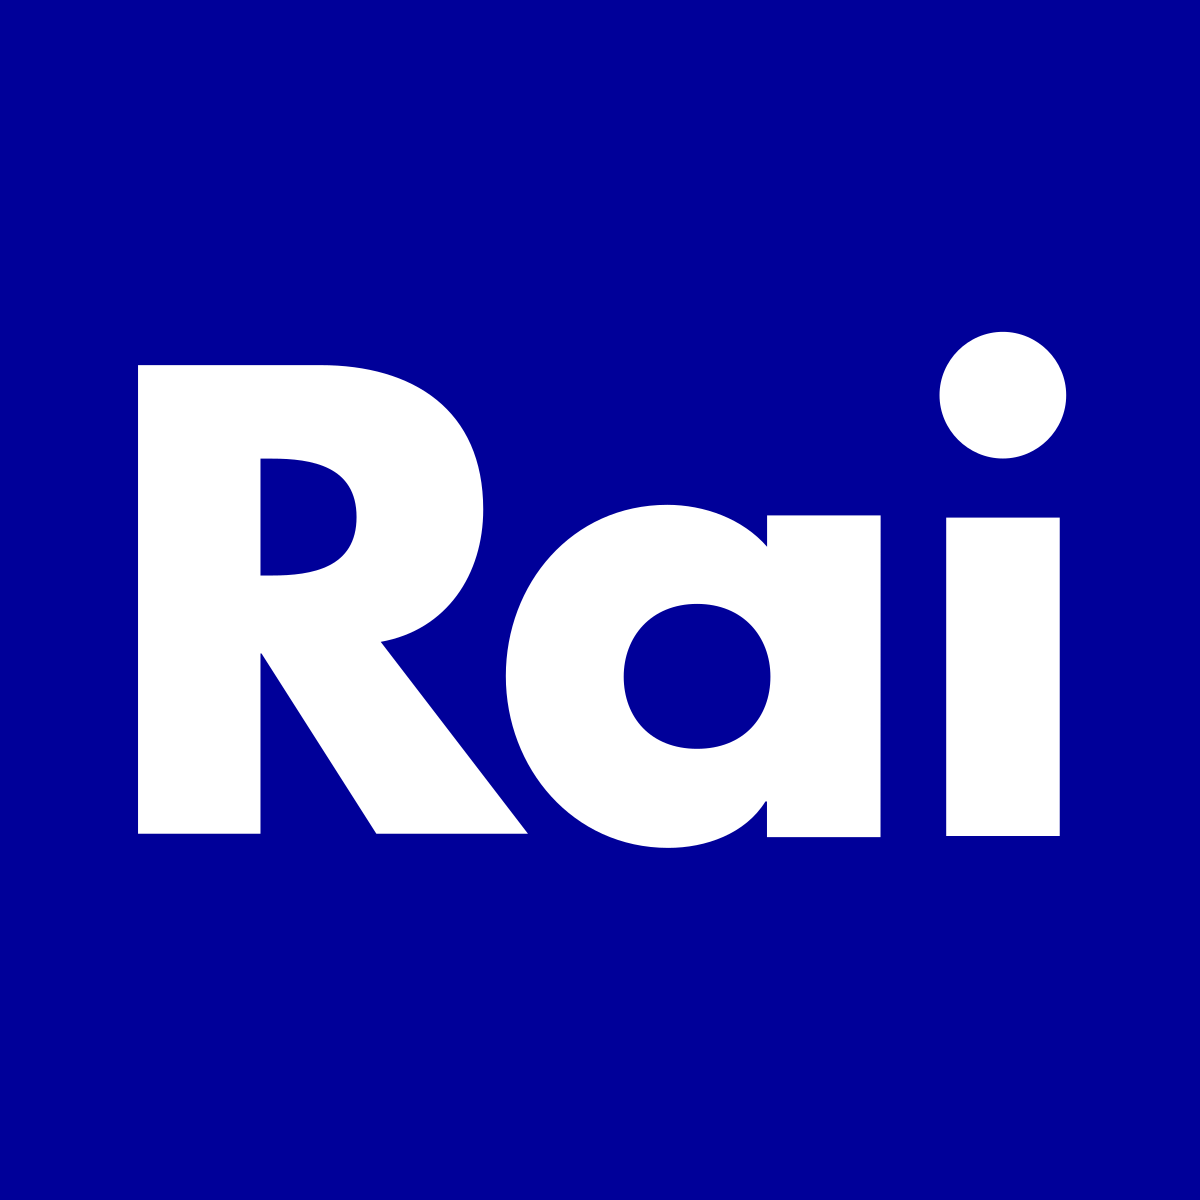 Der italienische Fernsehsender RAI streikt heute gegen die Einmischung der eigenen Regierung in die Programminhalte. Der kritische und unabhängige Rundfunk leidet unter der Auswechslung zahlreicher Führungsposten durch Parteigänger der Regierung: djv.de/startseite/ser…